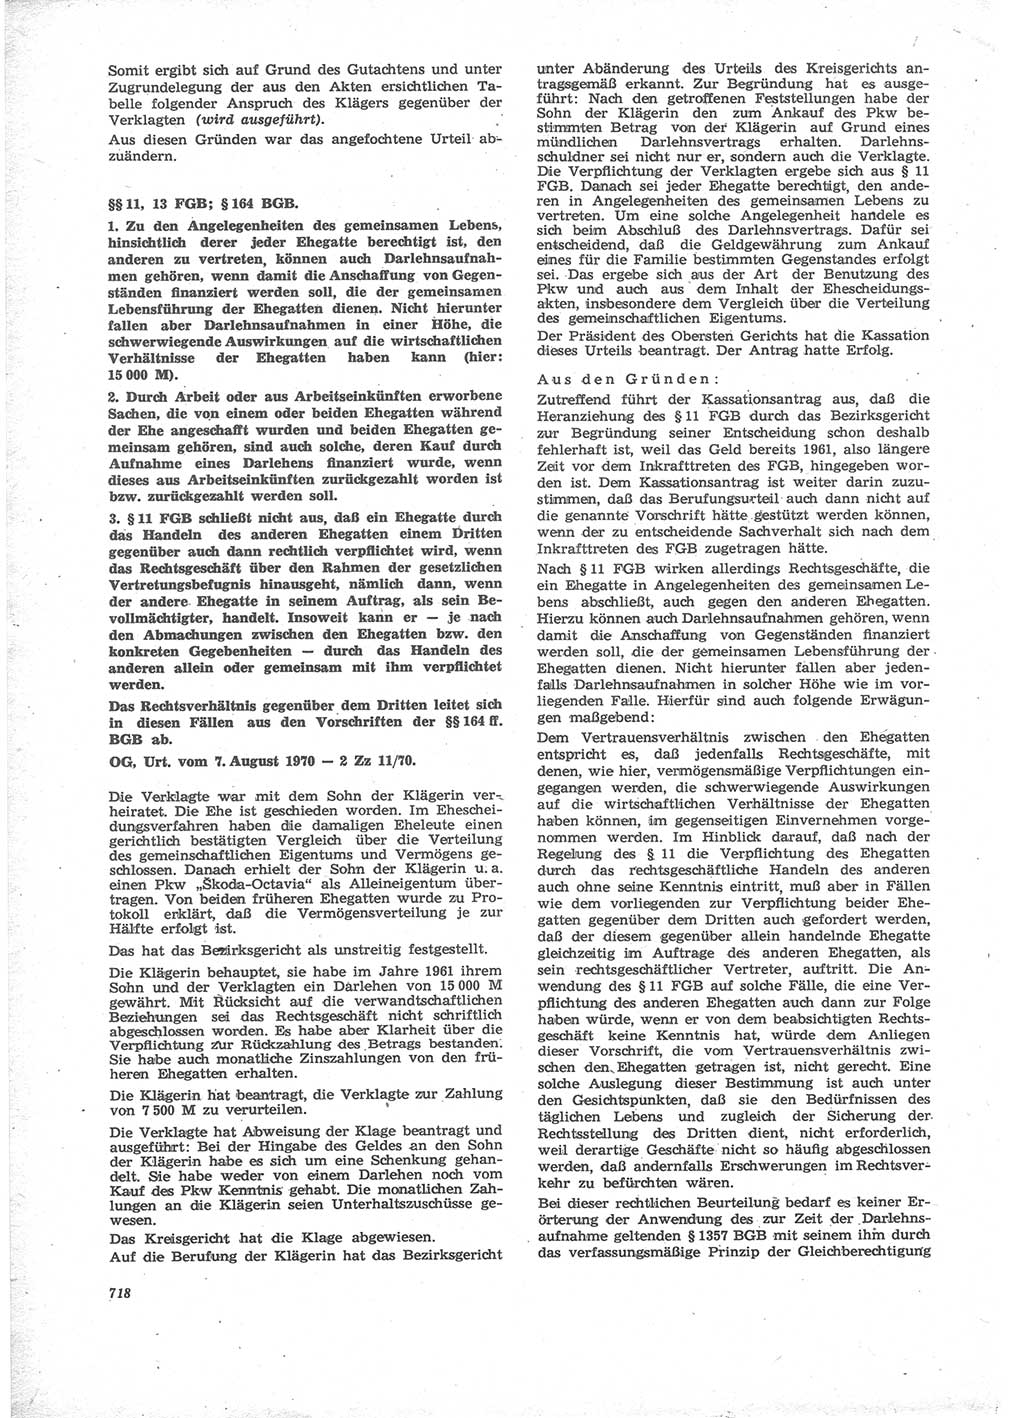 Neue Justiz (NJ), Zeitschrift für Recht und Rechtswissenschaft [Deutsche Demokratische Republik (DDR)], 24. Jahrgang 1970, Seite 718 (NJ DDR 1970, S. 718)